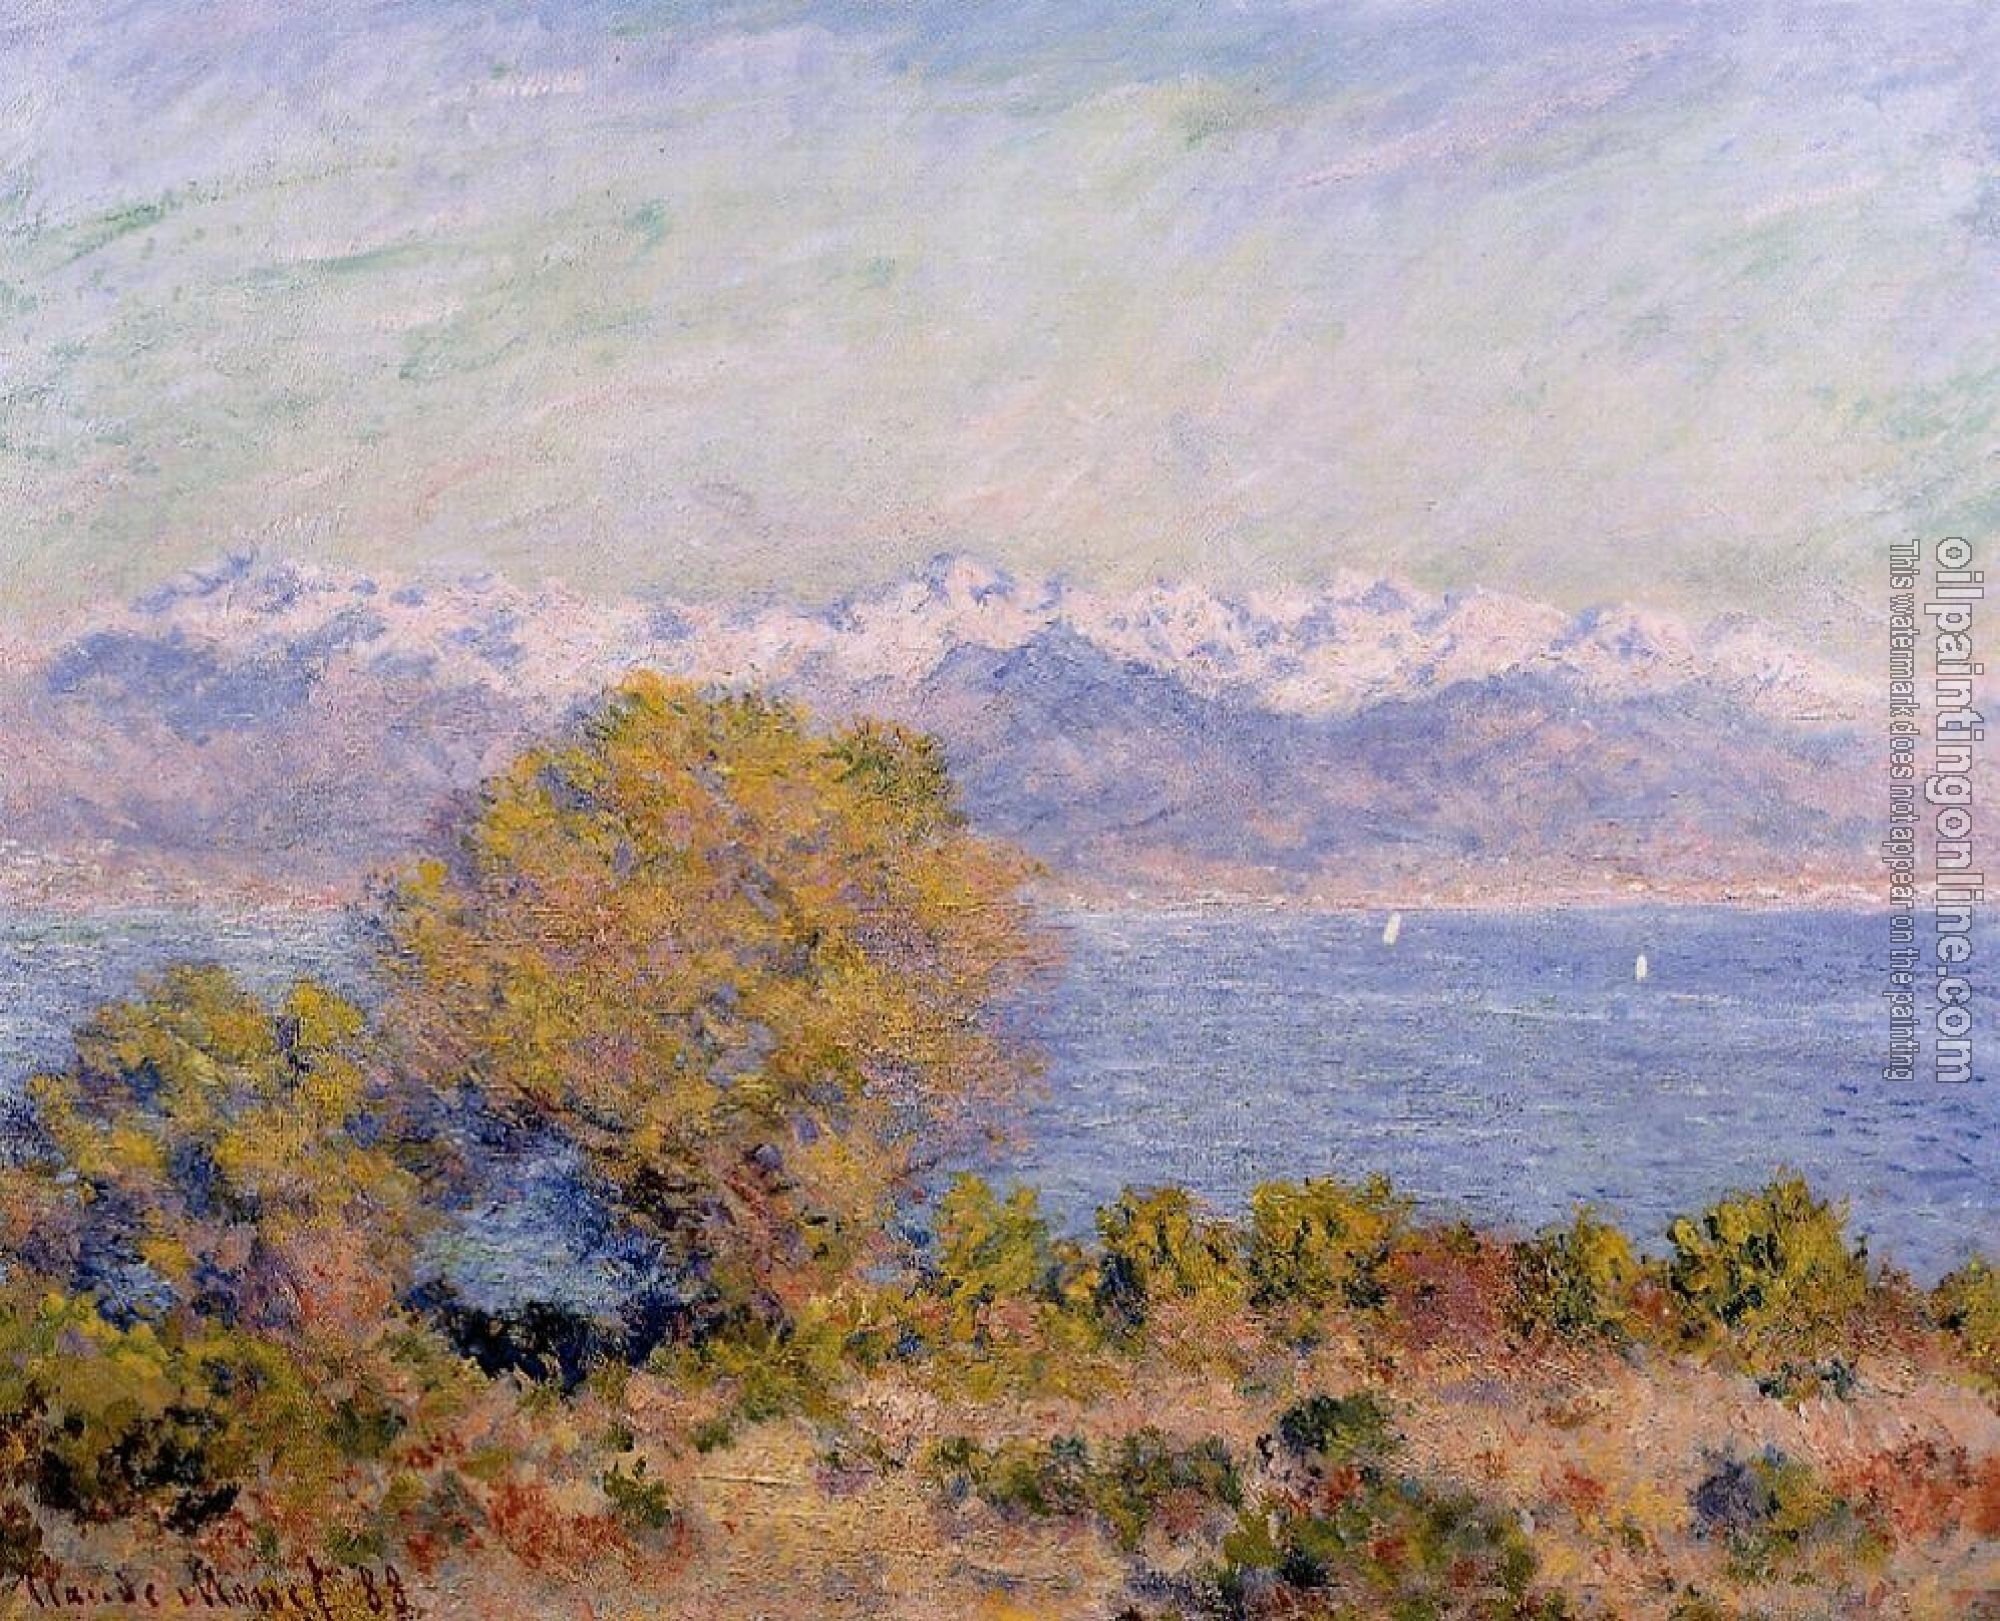 Monet, Claude Oscar - The Alps Seen from Cap d'Antibes